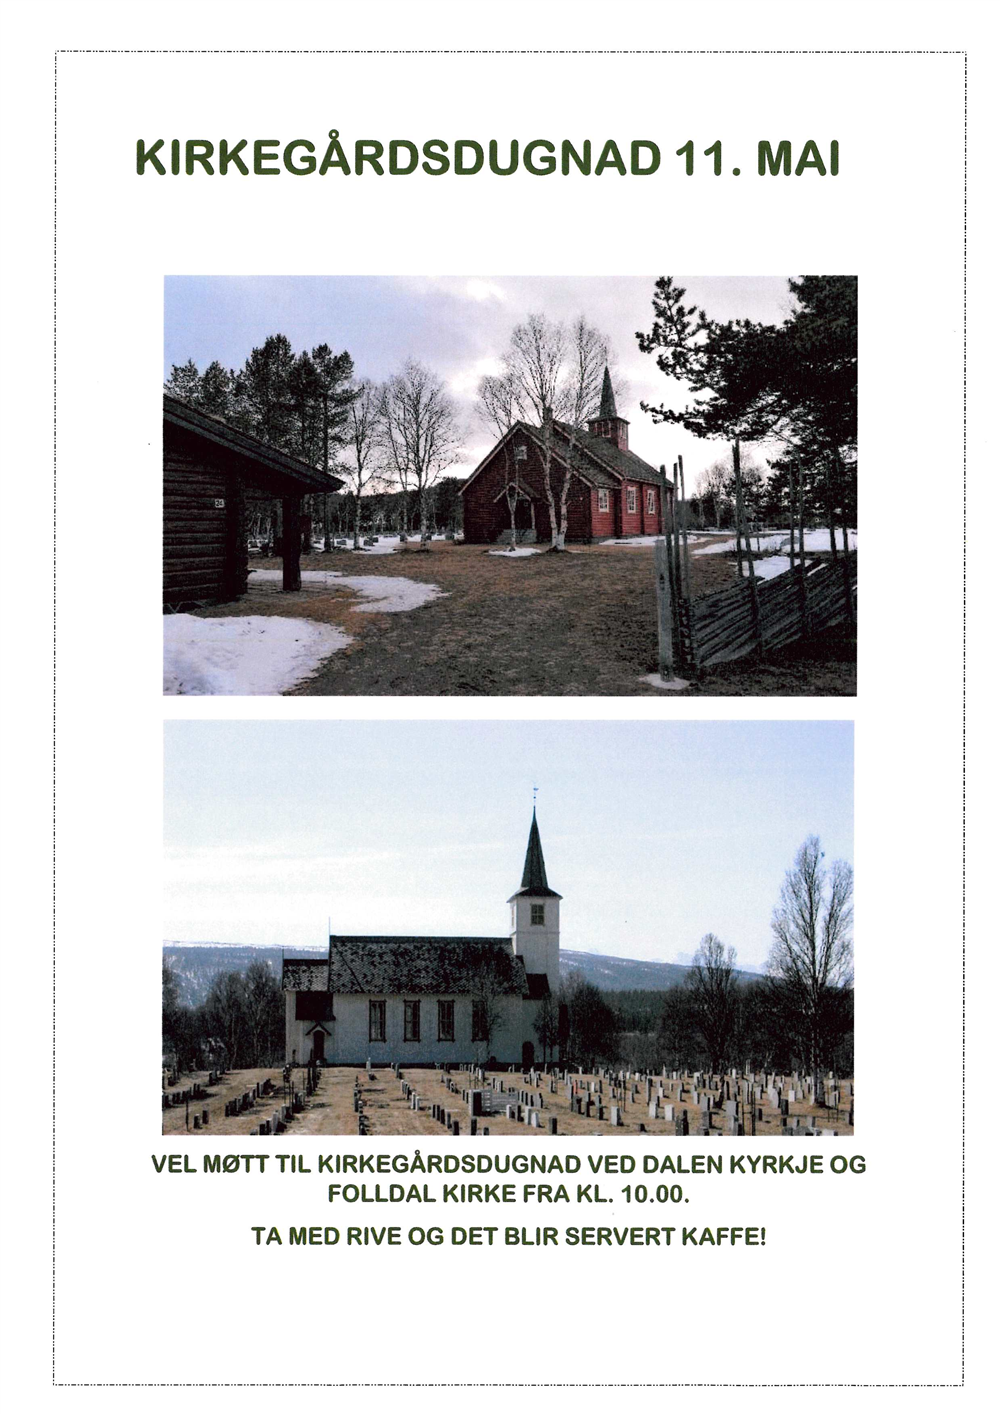 Dalen kyrkjegard og Folldal kirkegård, vårbilde